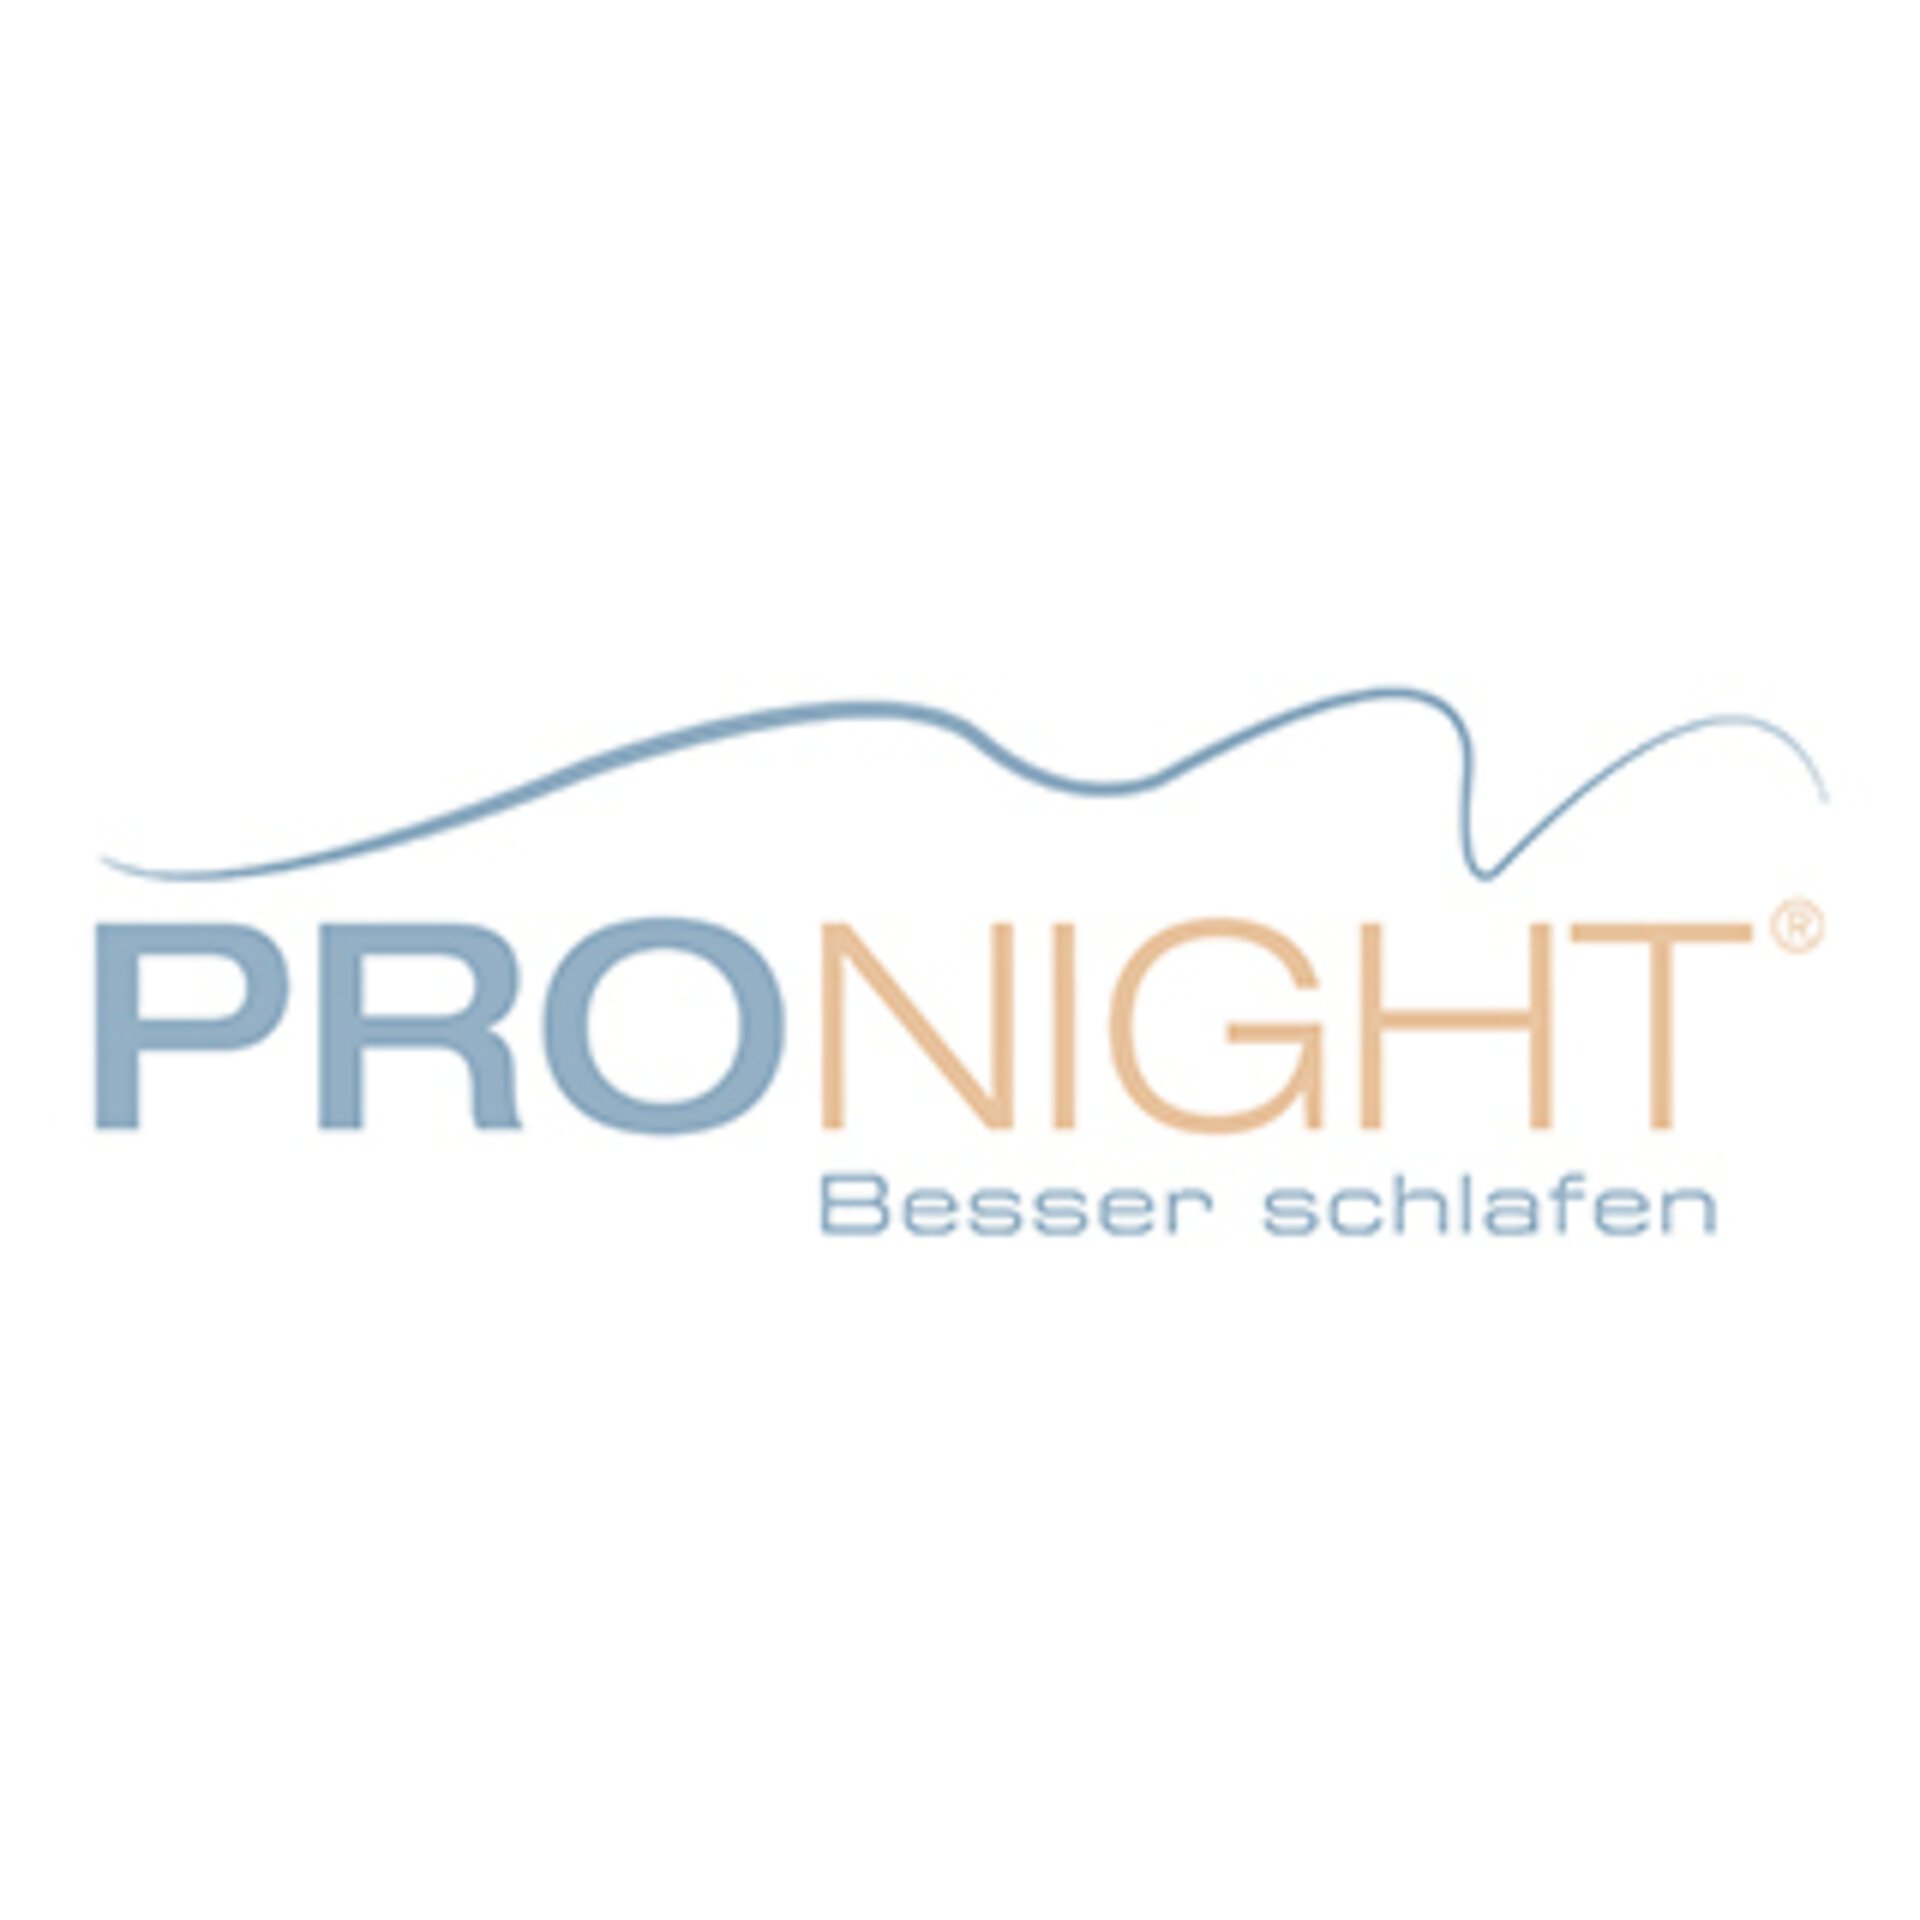 Logo "PRO NIGHT - Besser schlafen"